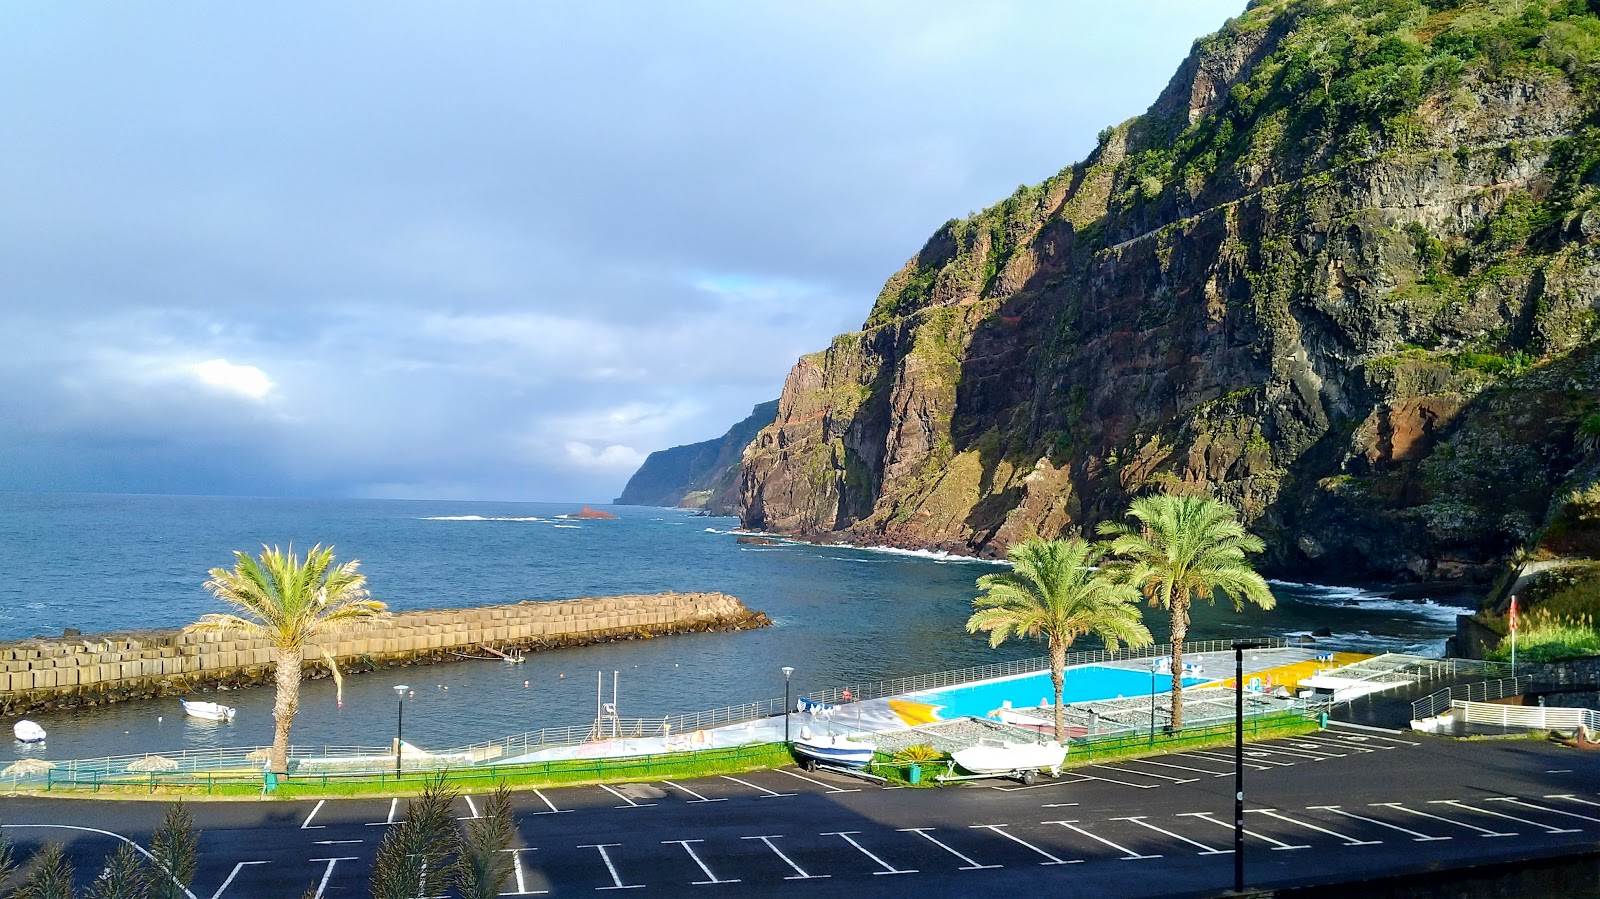 Foto von Piscinas de Ponta Delgada mit türkisfarbenes wasser Oberfläche